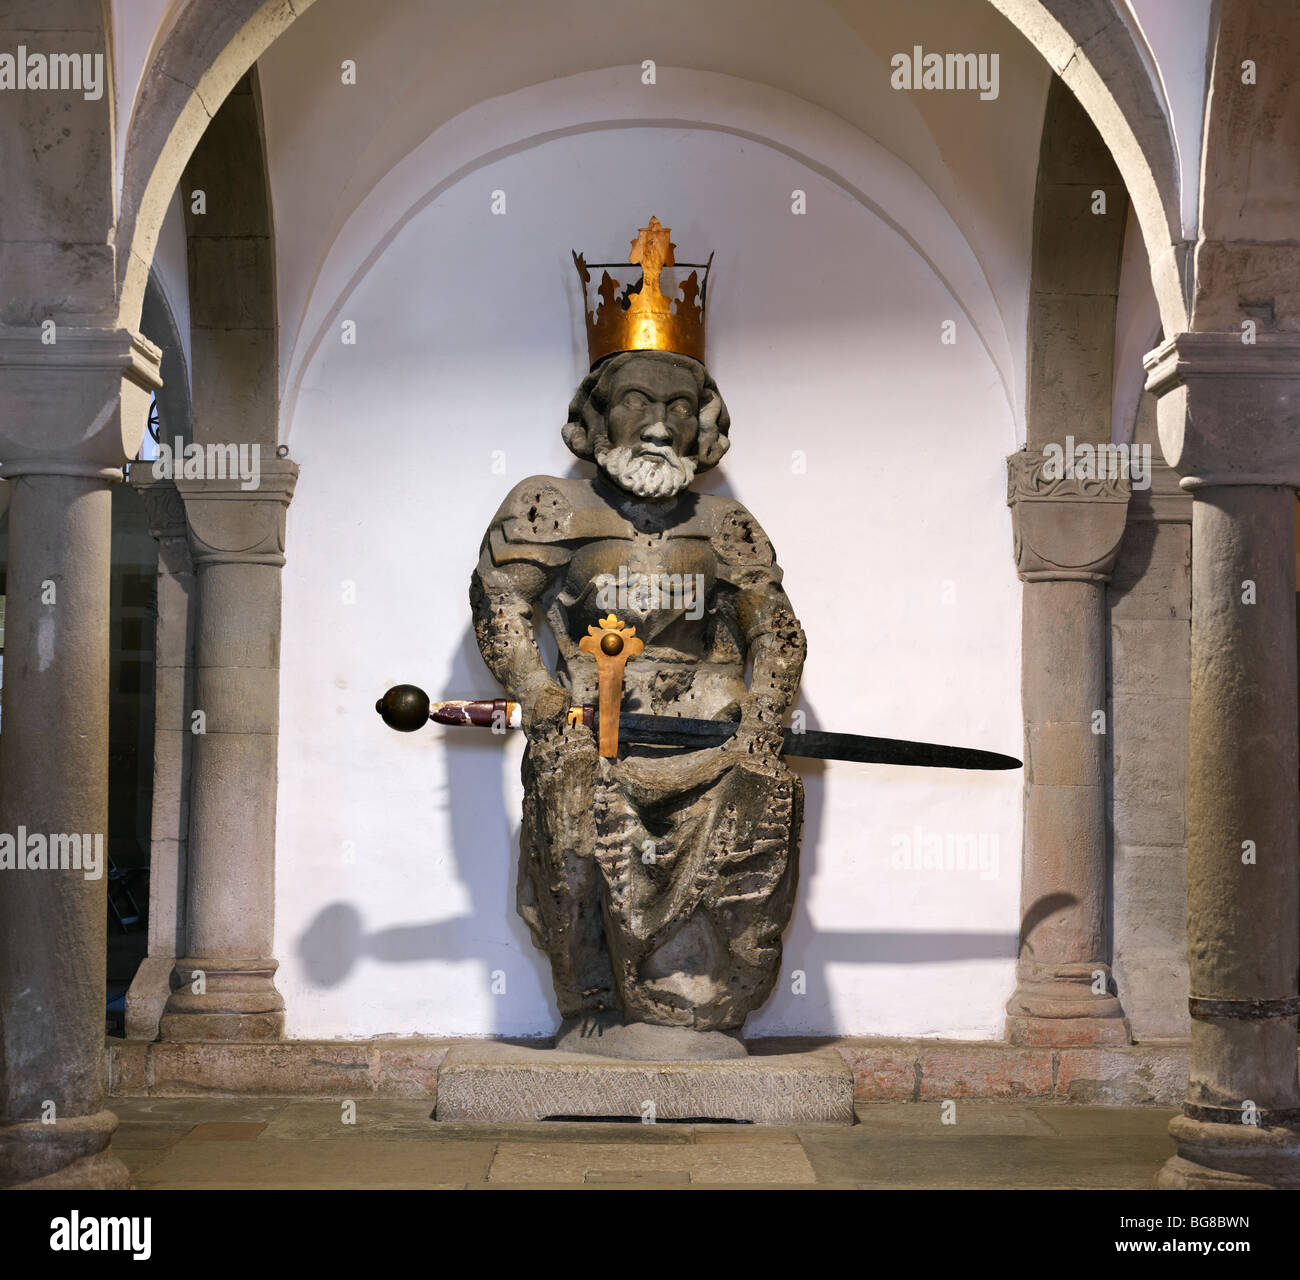 La Suisse, Zurich,statue Empereur Ludwig (Louis le Germanique), le petit-fils de Charlemagne dans la crypte de l'église Fraumünster Banque D'Images